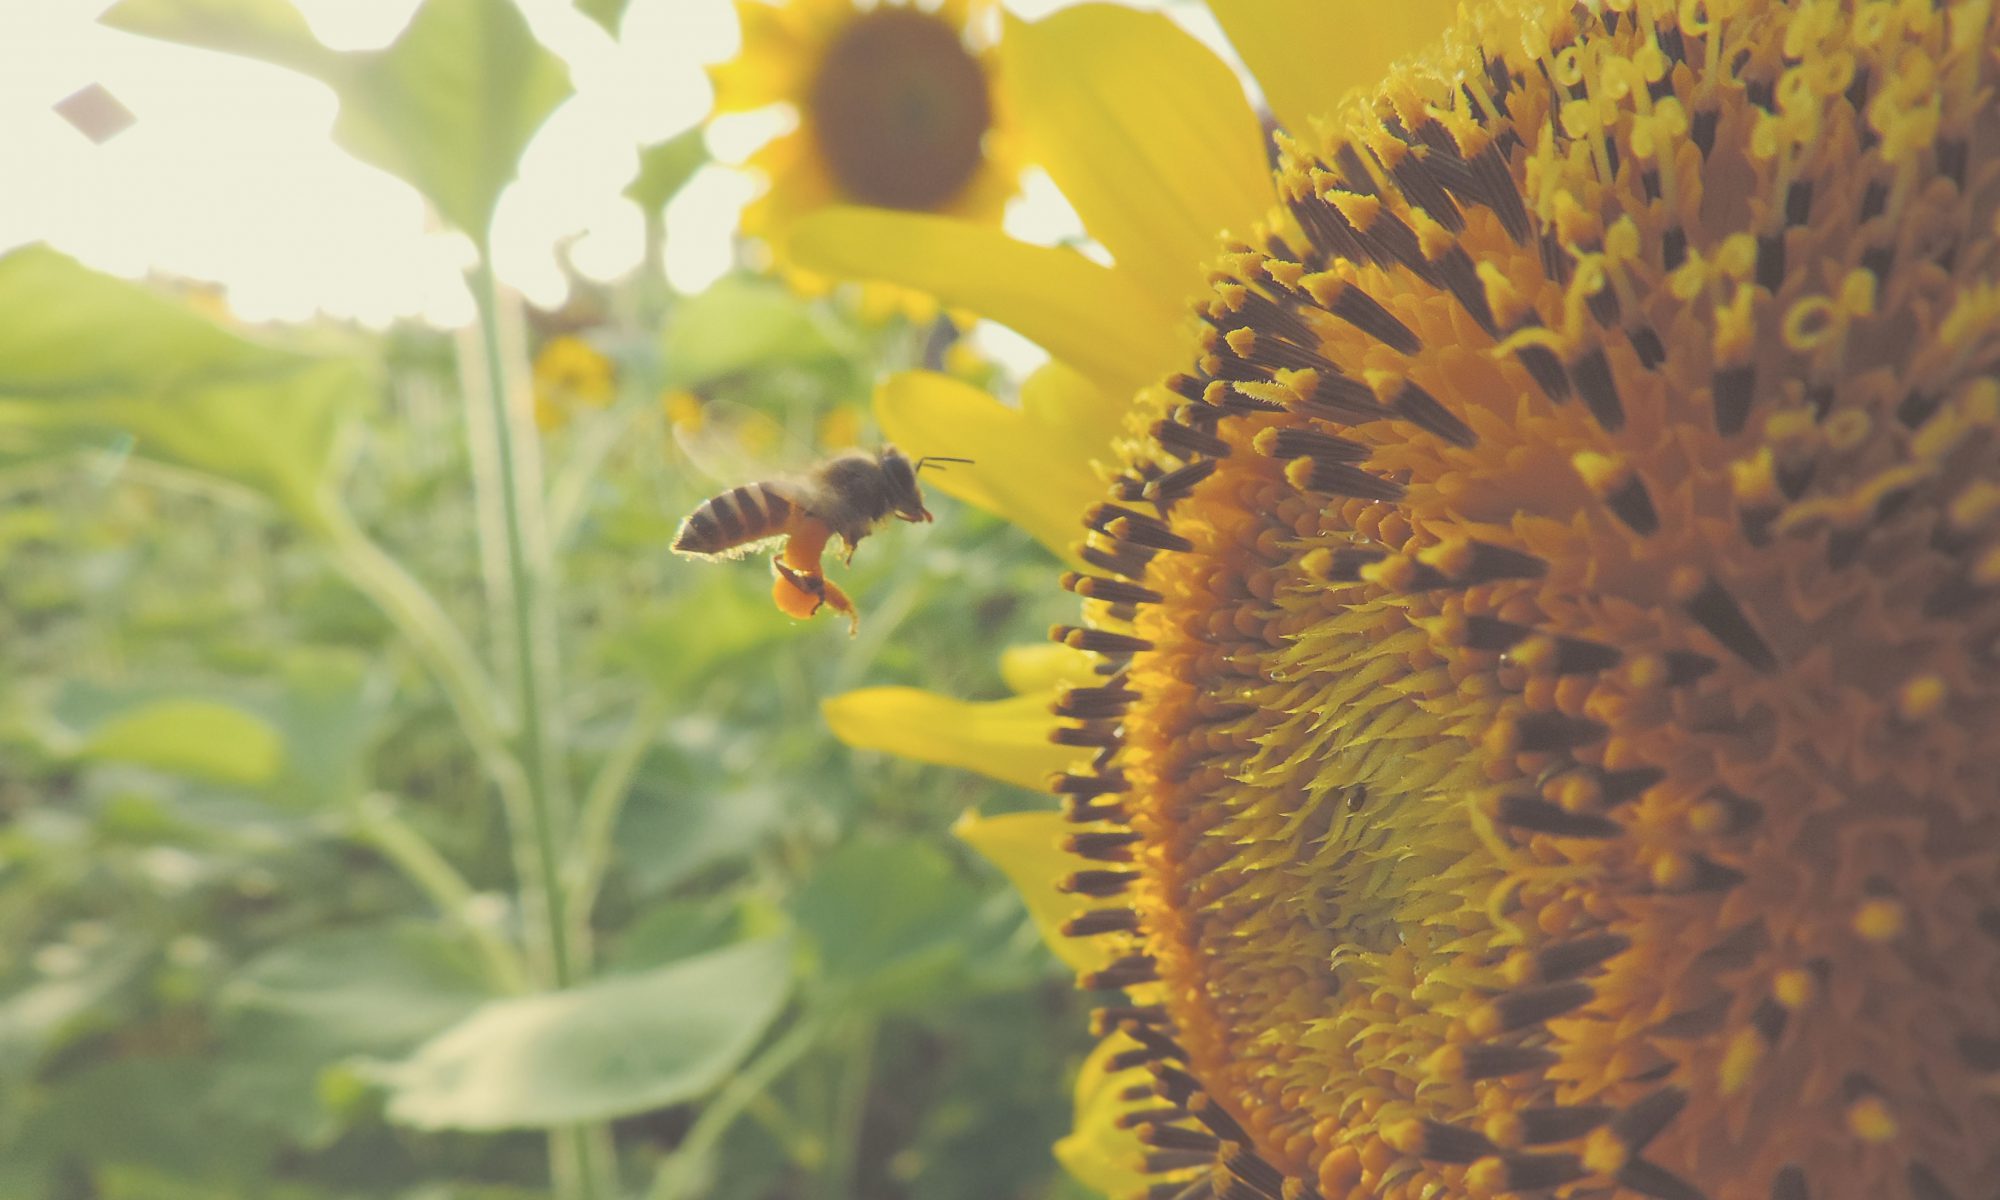 Insektensterben und Artenschwund stoppen fordern die Grünen. Das Massensterben von Bienen und anderen Insekten hat langfristig hohe ökonomische Folgen.